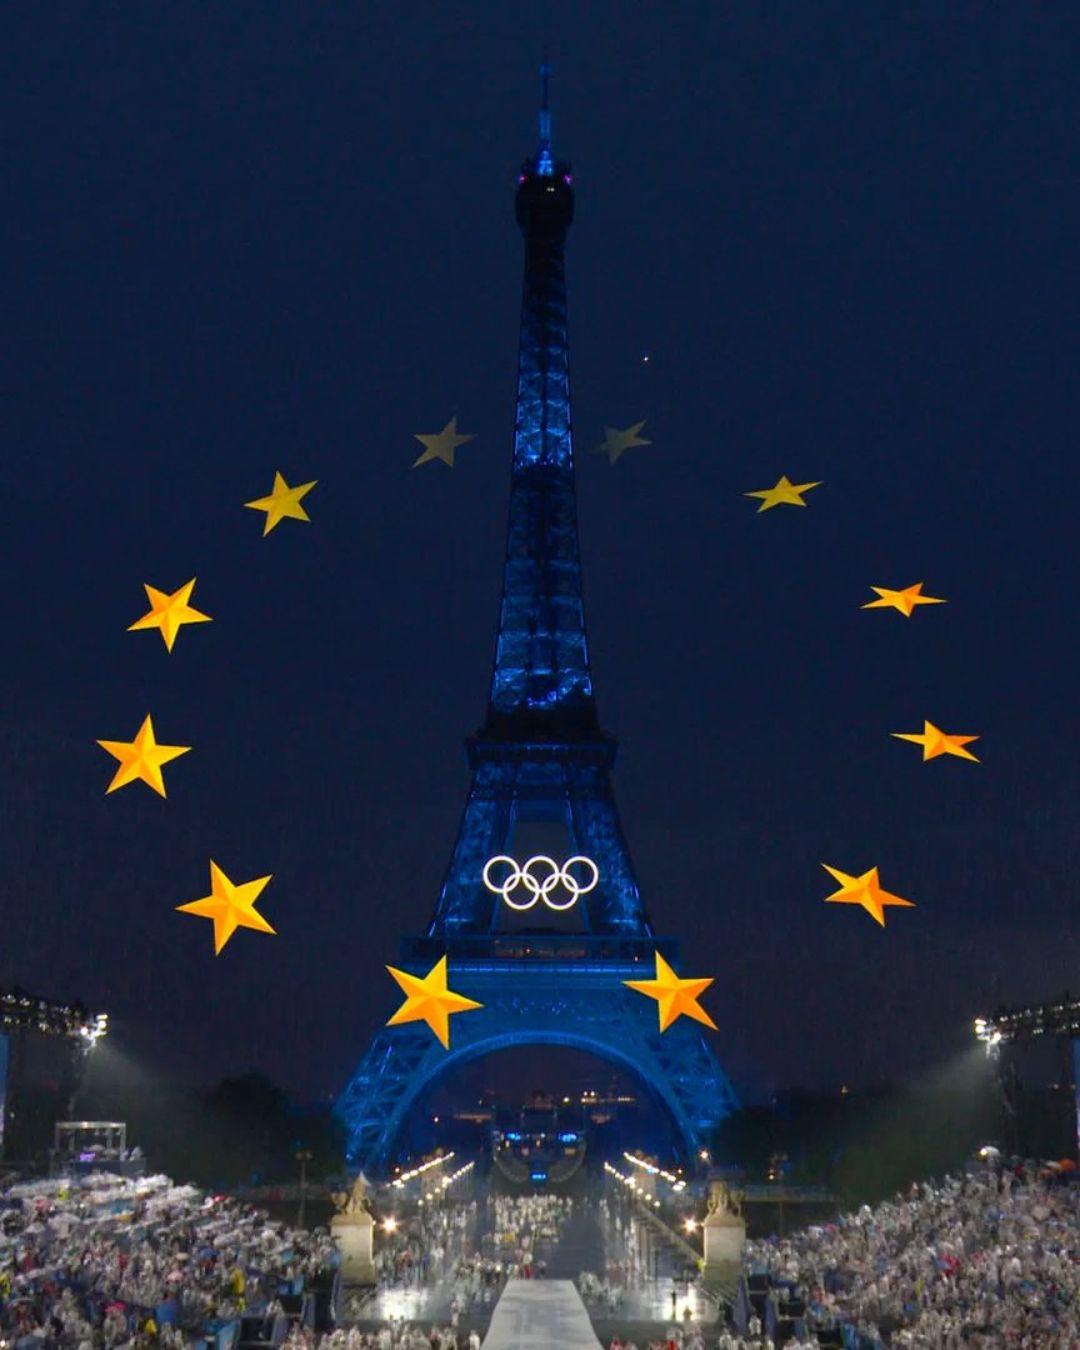 Uni Eropa pada Olimpiade 2024 di Paris: persatuan, solidaritas, dan keberagaman